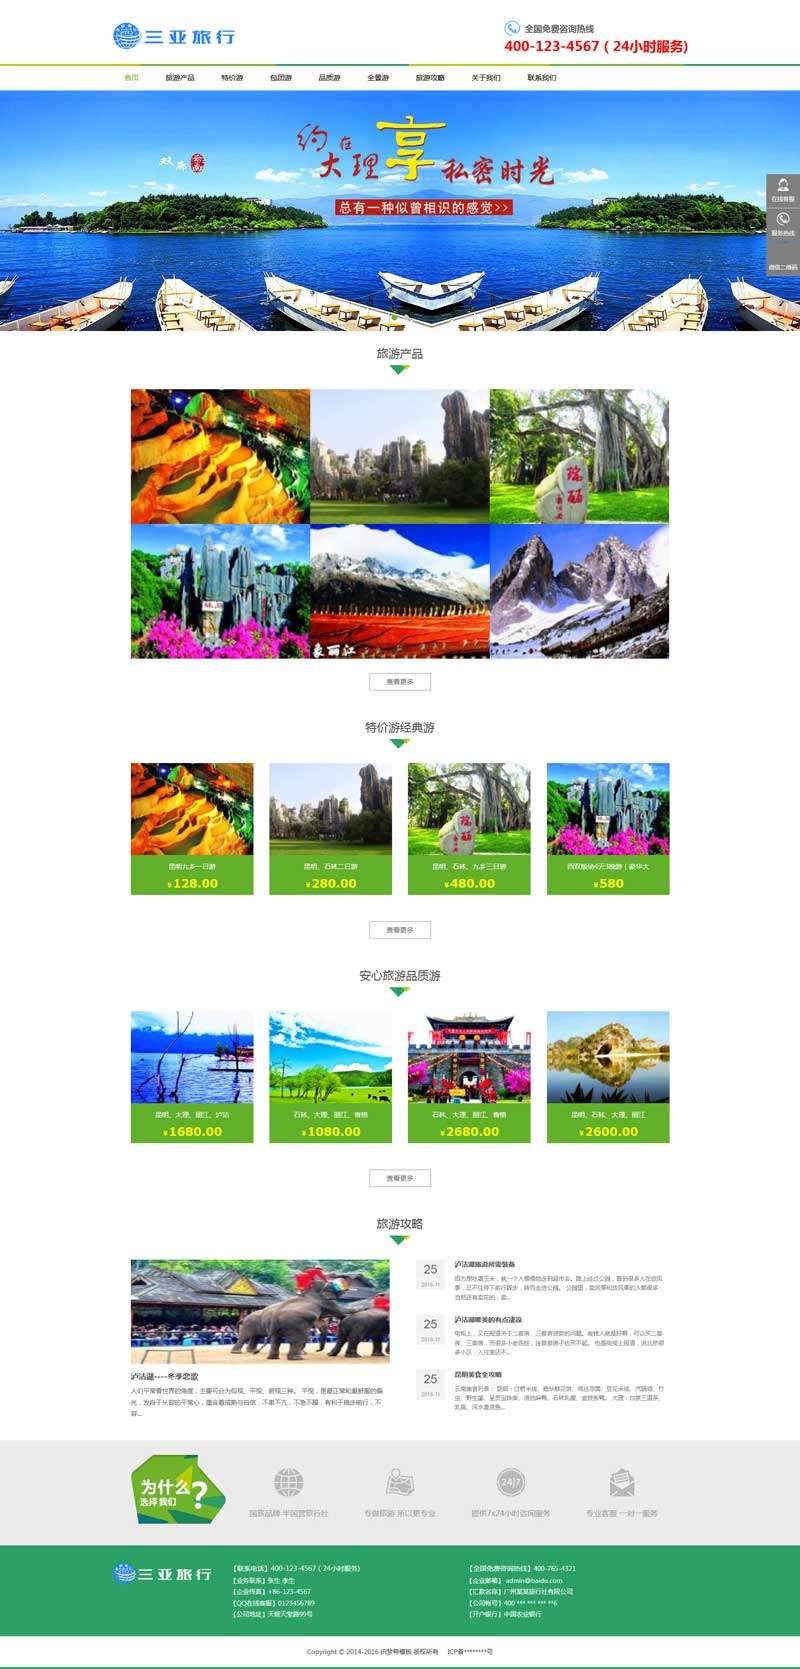 旅游团旅行社手机网站WordPress模板主题演示图